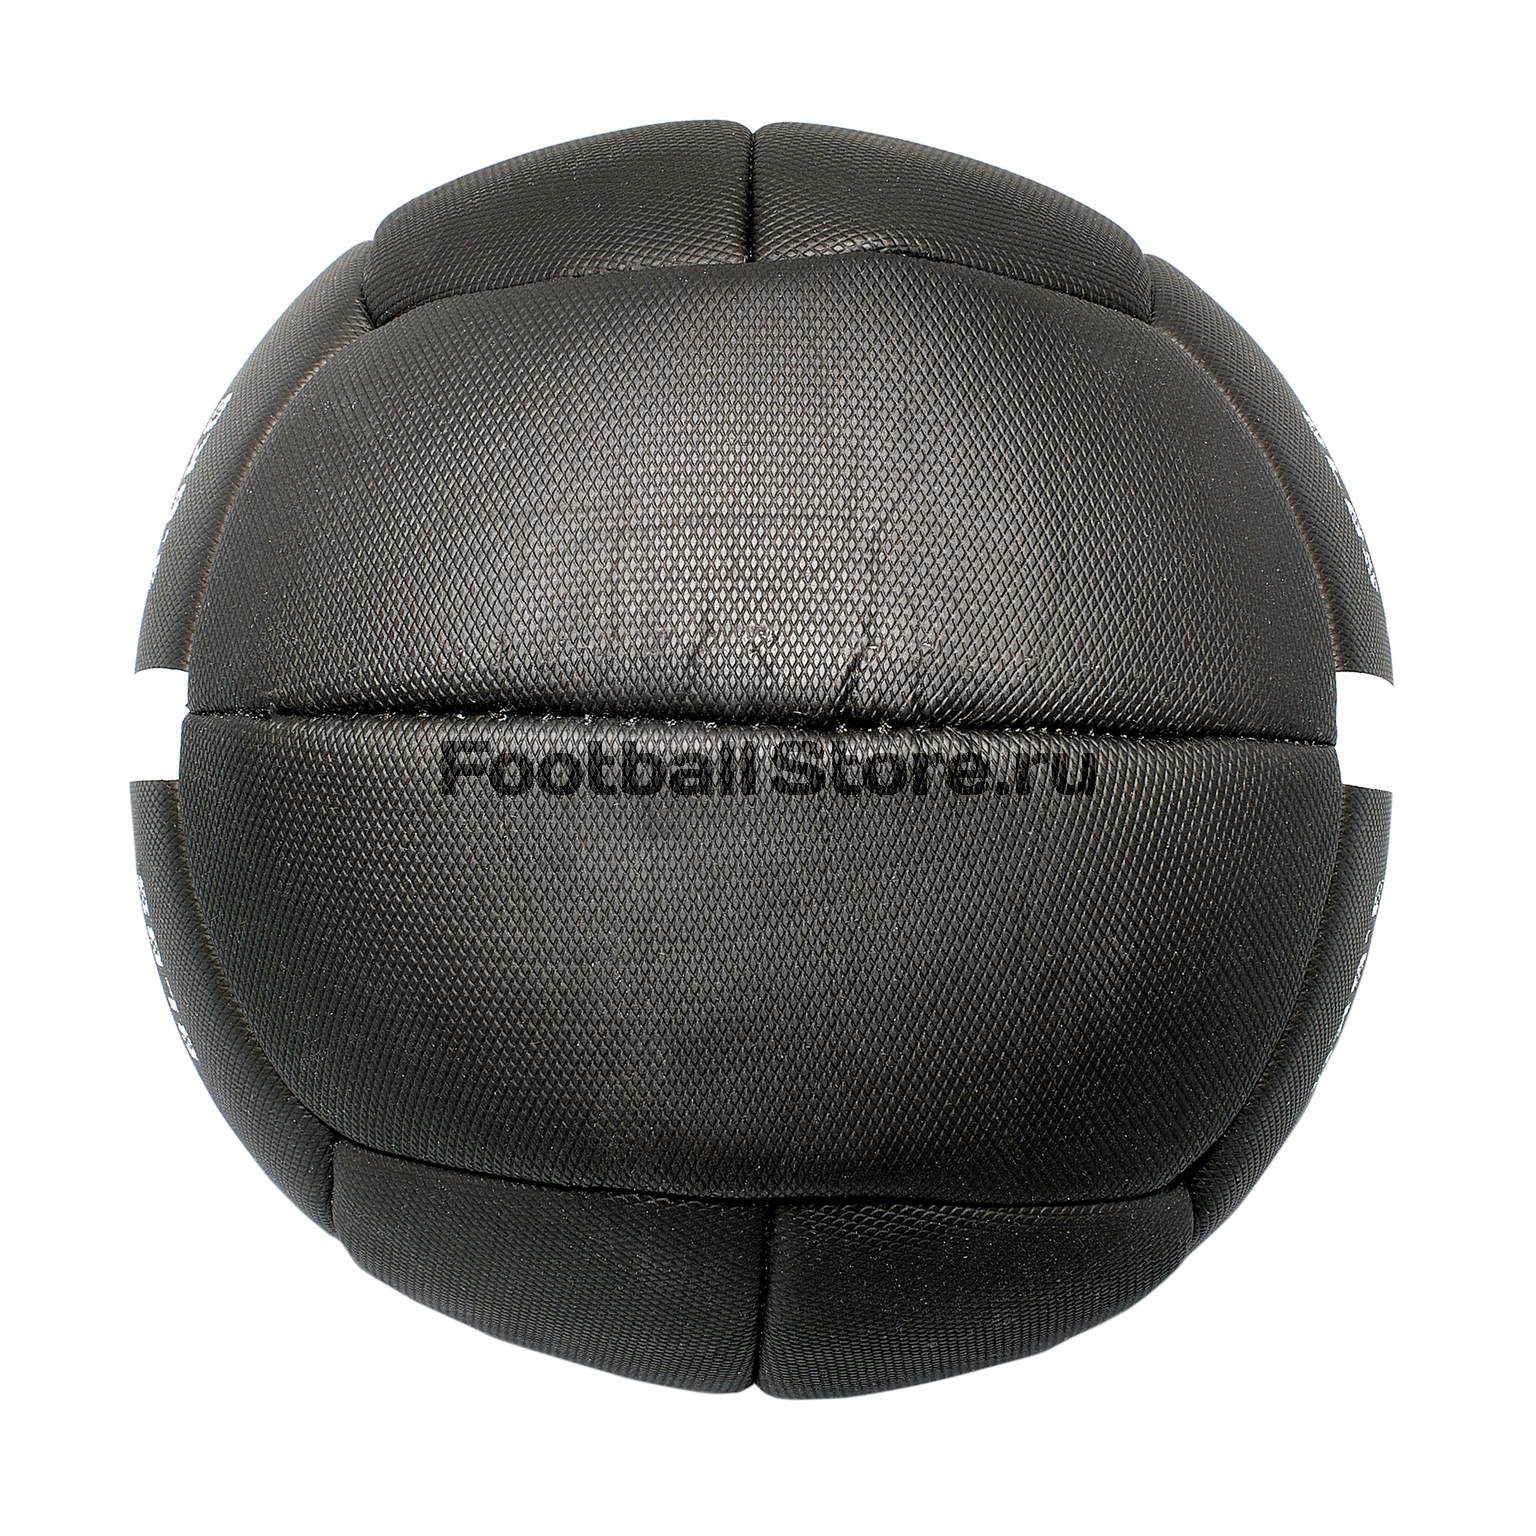 Мяч для тренировок Nike 8 LBS 3.6 KG N.EW.05.010.NS